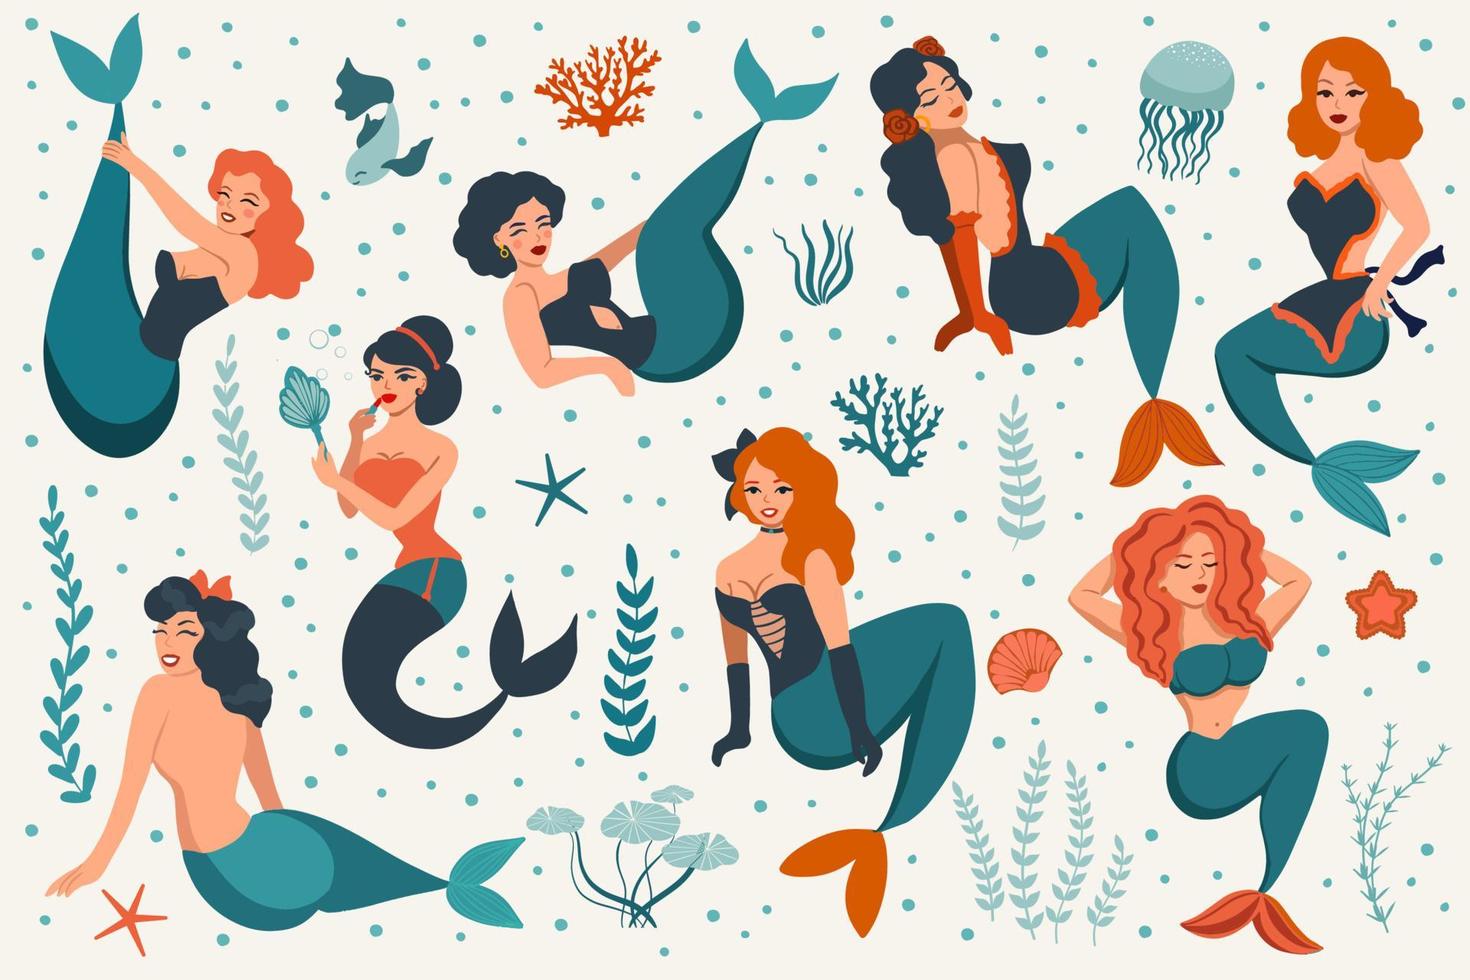 lindas sirenas en estilo retro pin-up. colección de personajes de mujeres antiguas. ilustración de vector de mundo submarino